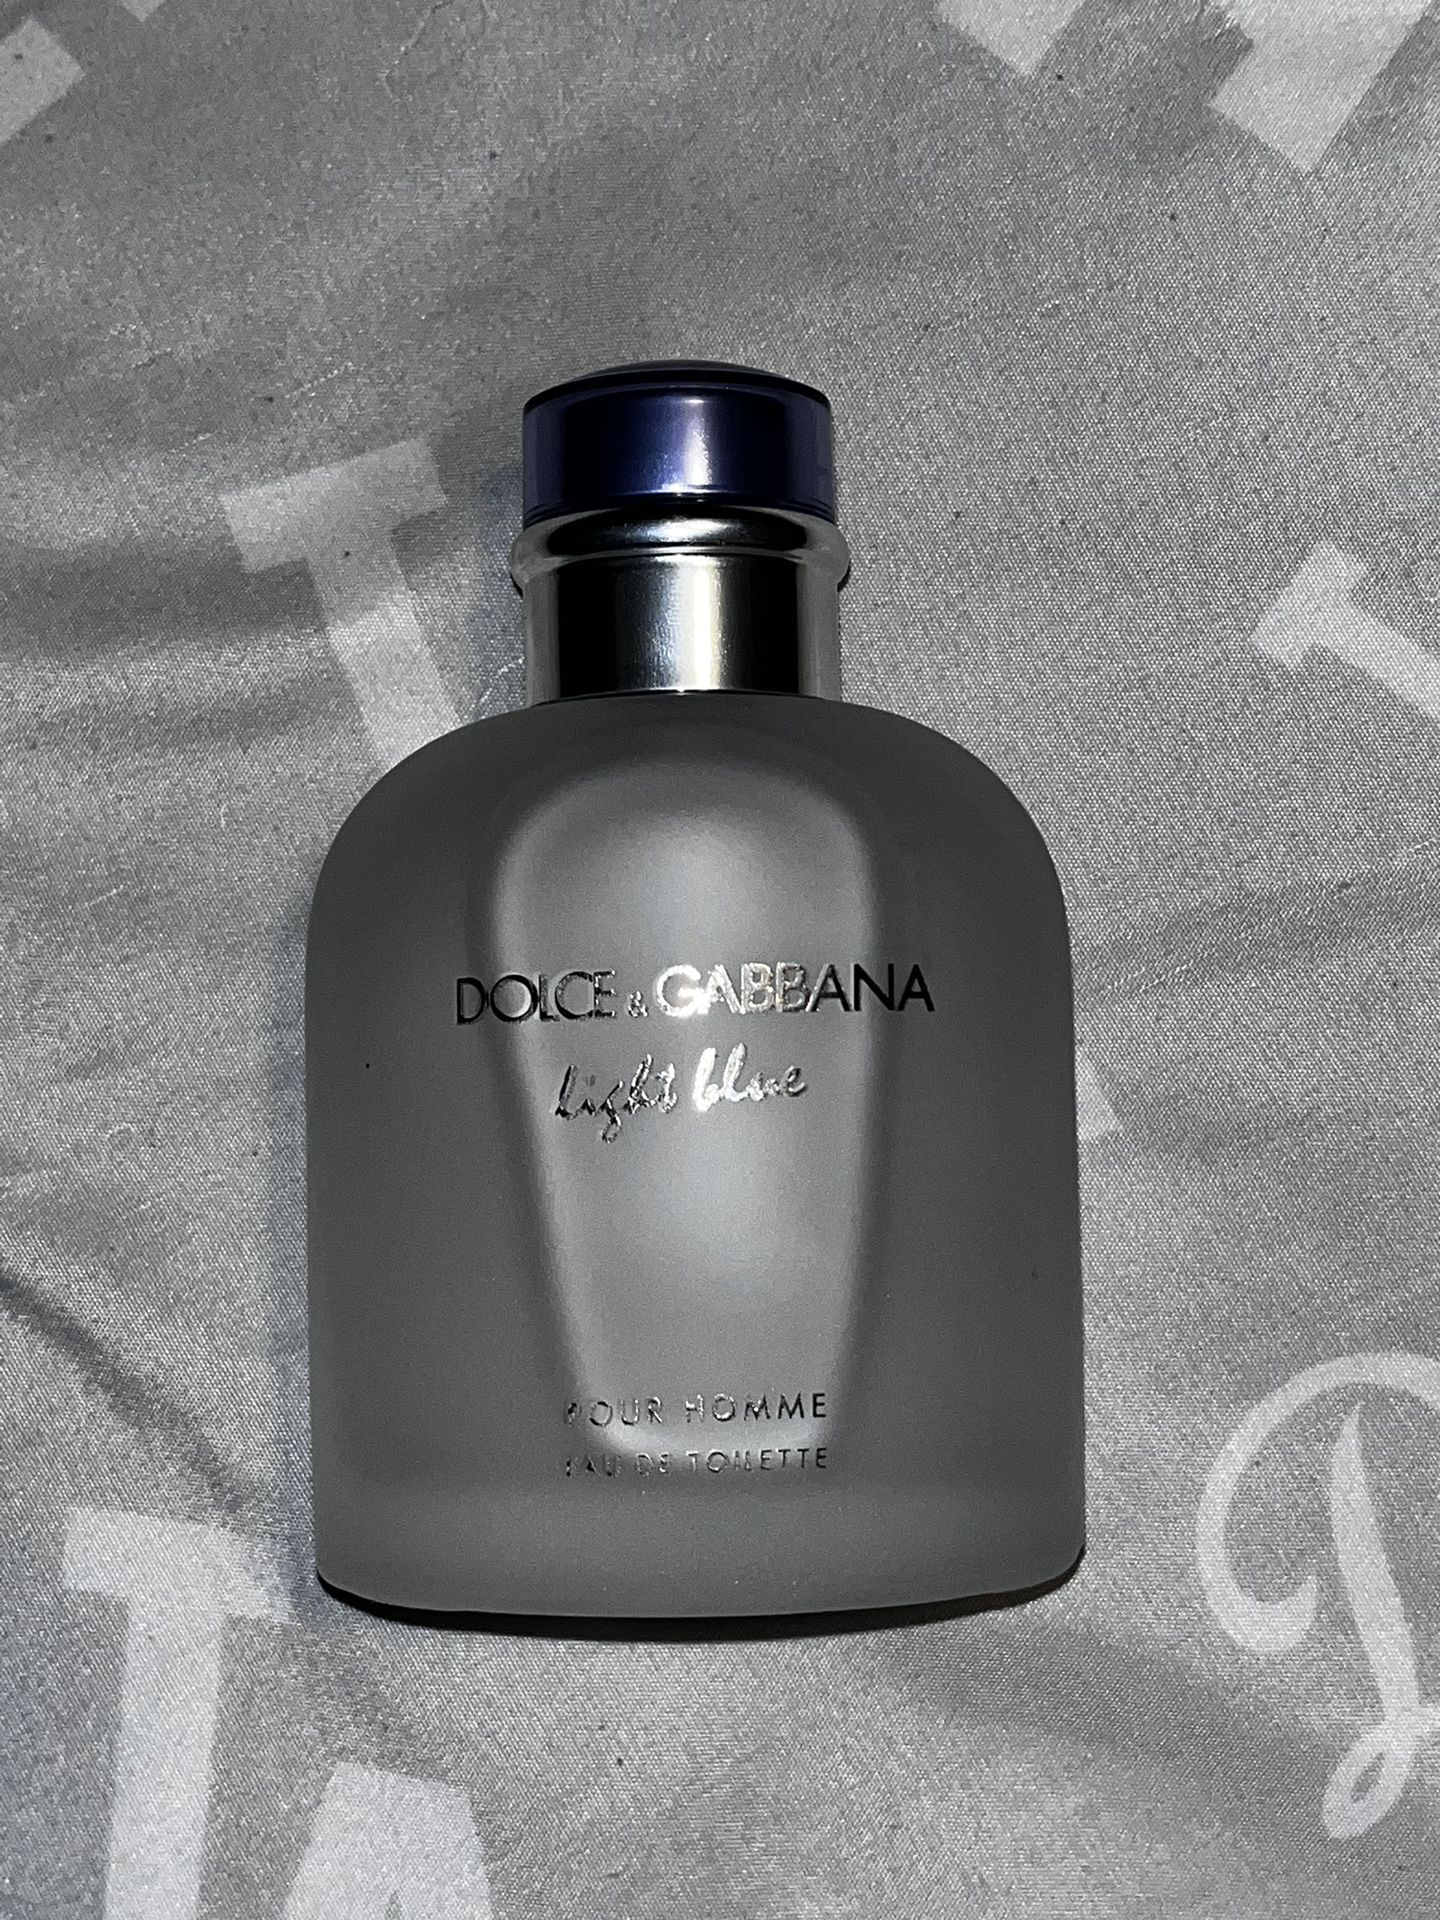 Dolce Gabbana Light blue